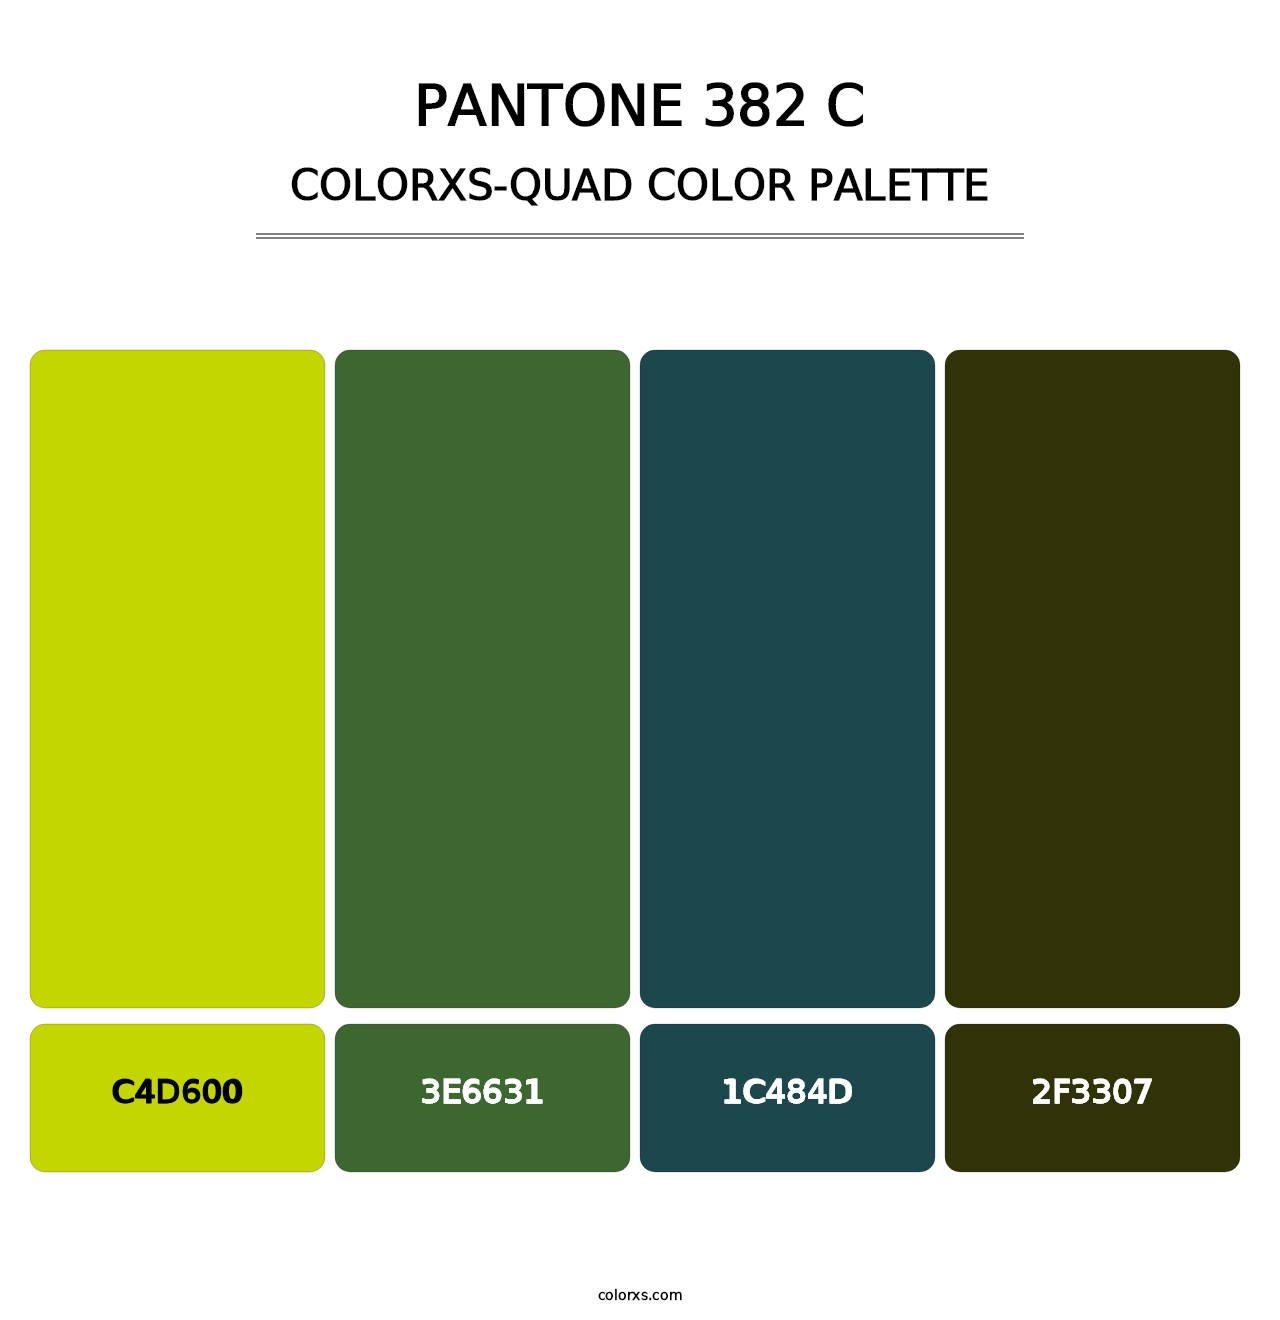 PANTONE 382 C - Colorxs Quad Palette